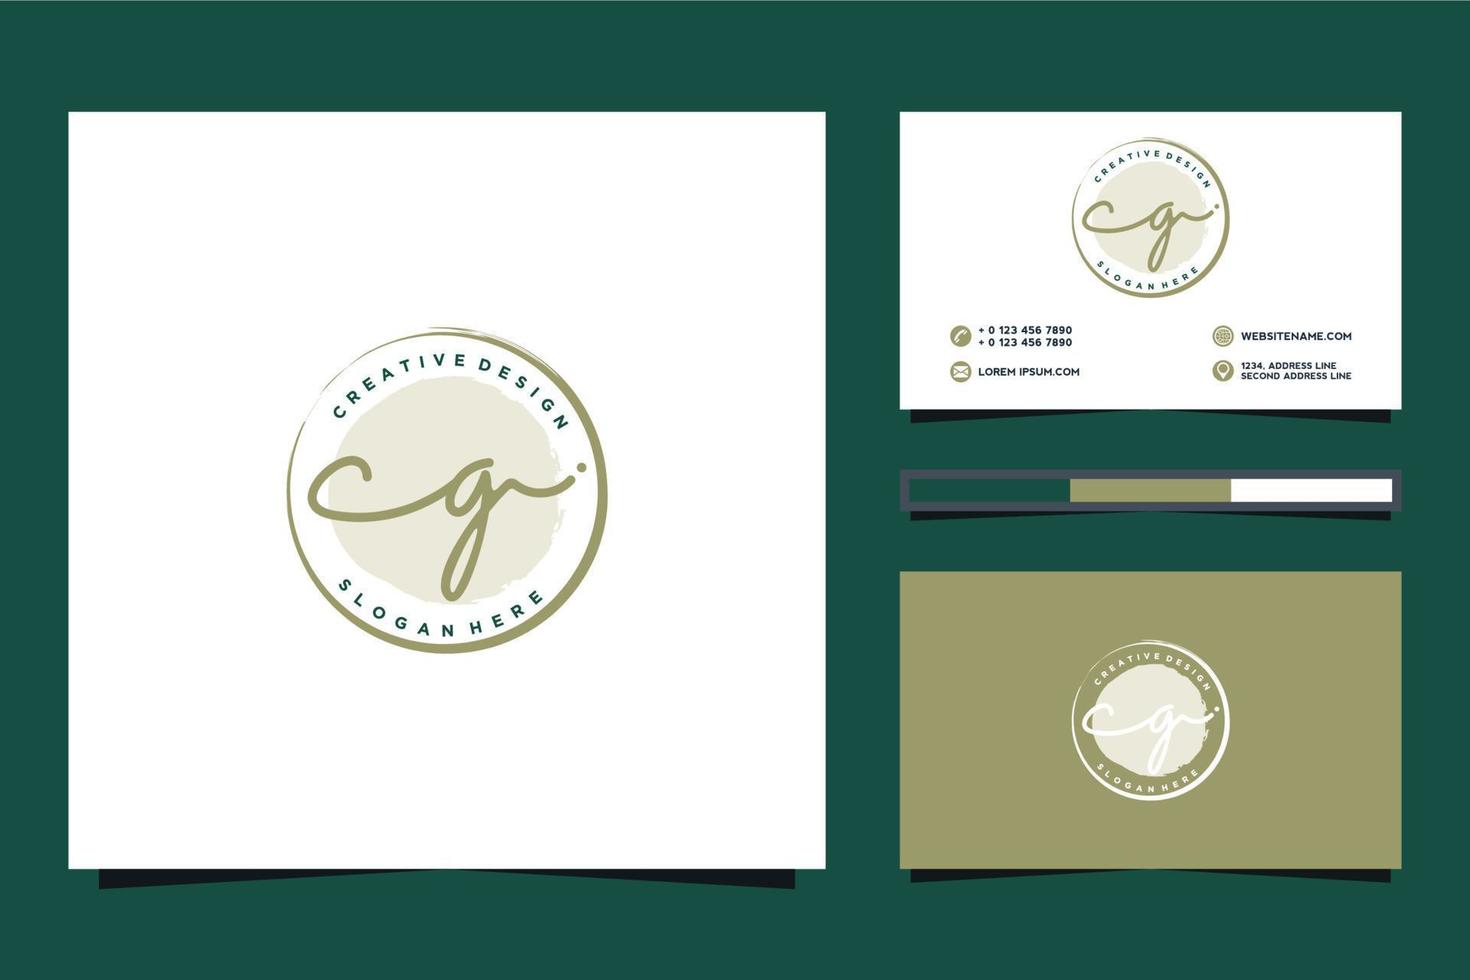 collections initiales de logo féminin cg et modèle de carte de visite vecteur premium